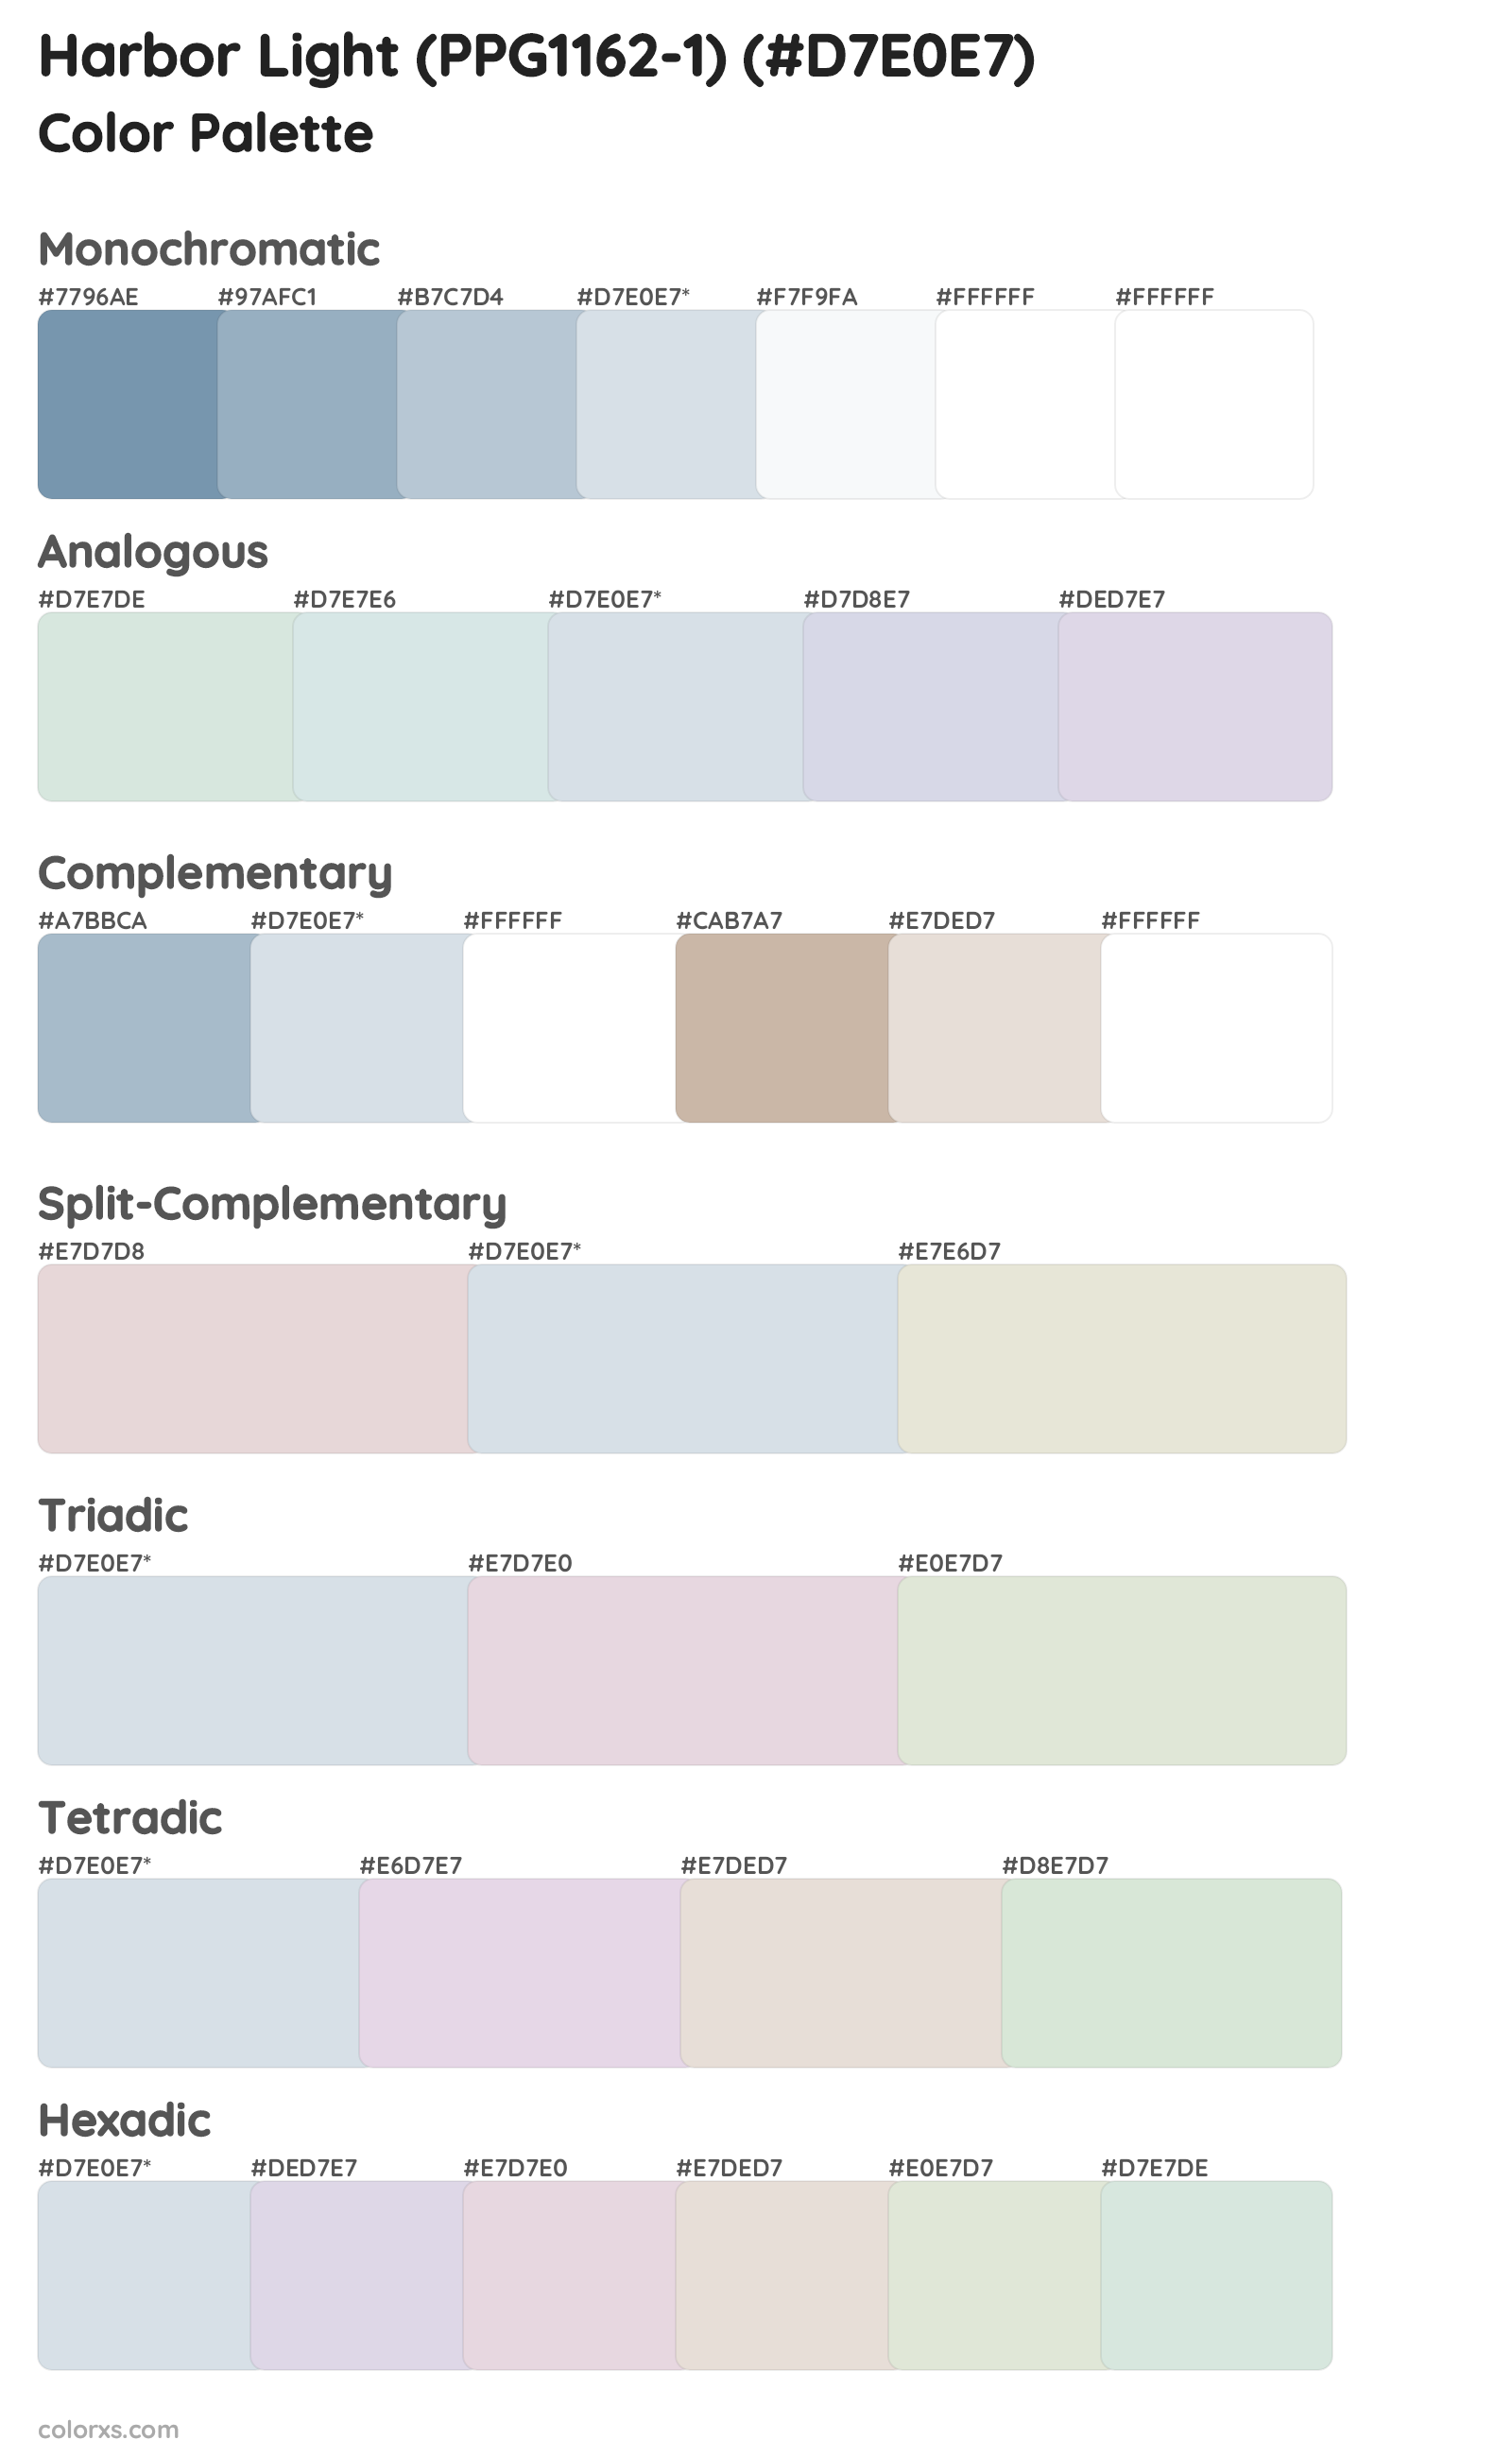 Harbor Light (PPG1162-1) Color Scheme Palettes